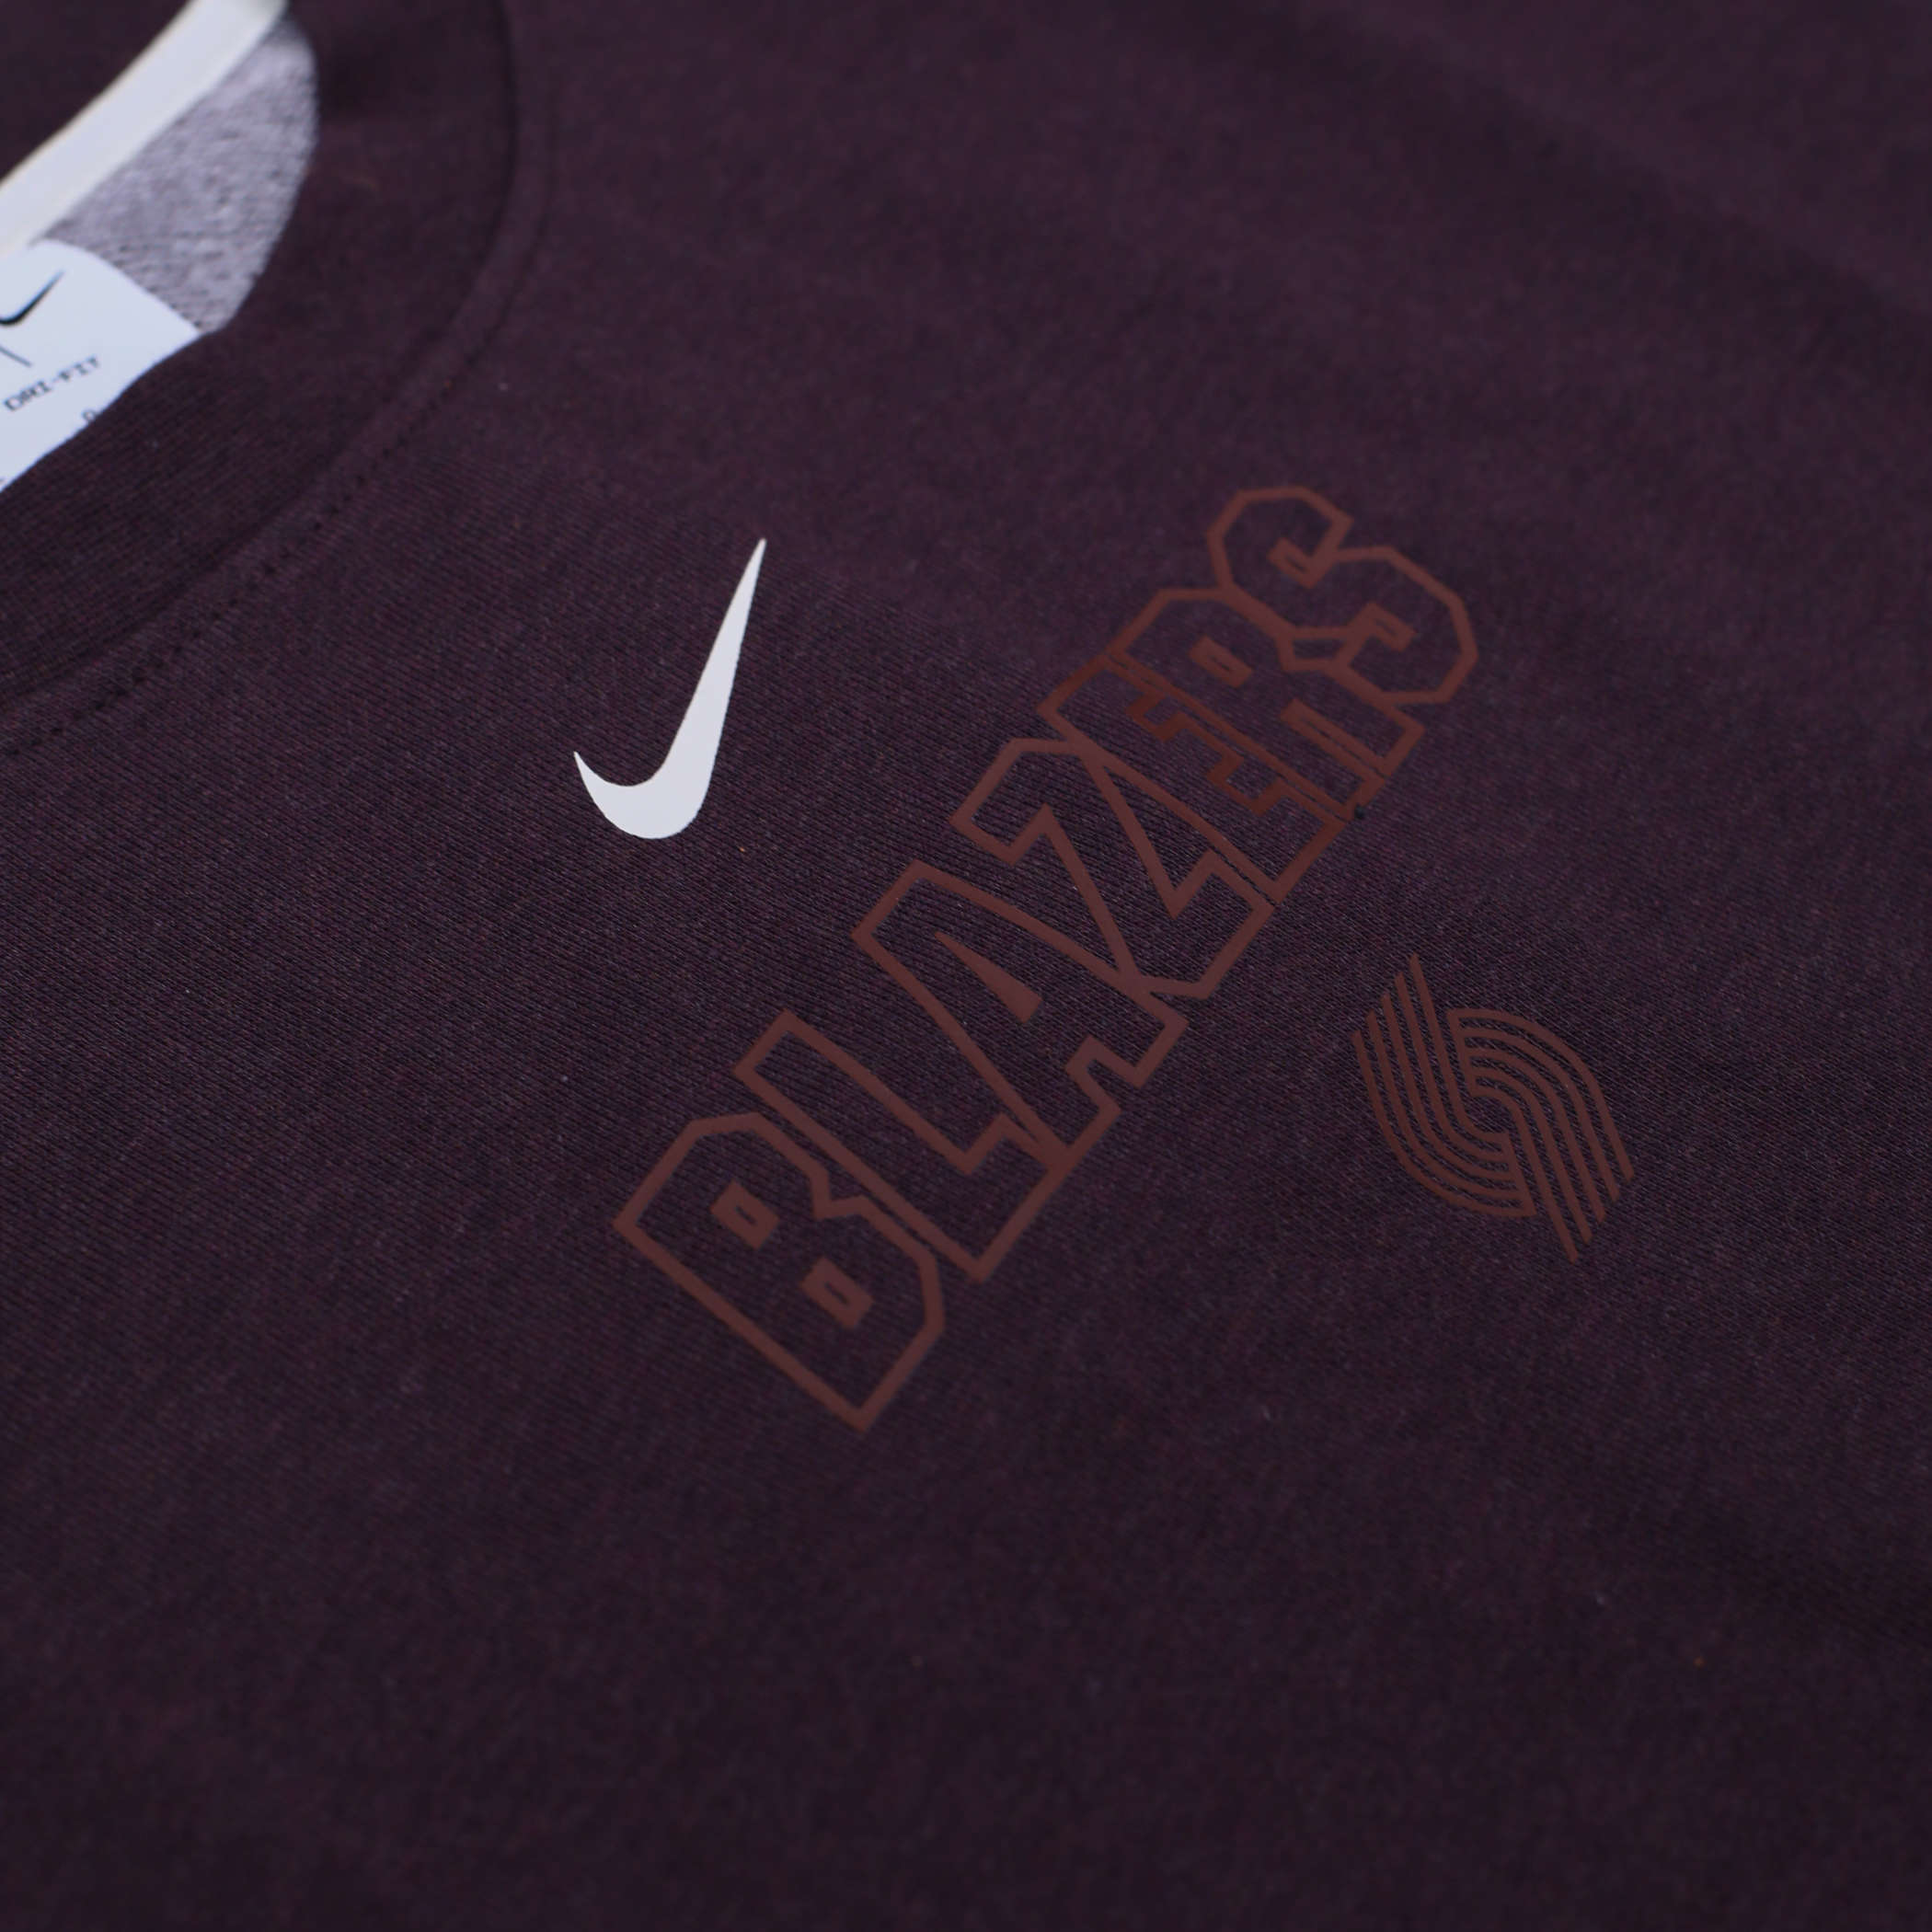 Portland Trail Blazers Spotlight Nike Men's Dri-Fit NBA Crew-Neck Sweatshirt in Red, Size: Medium | FB3640-657